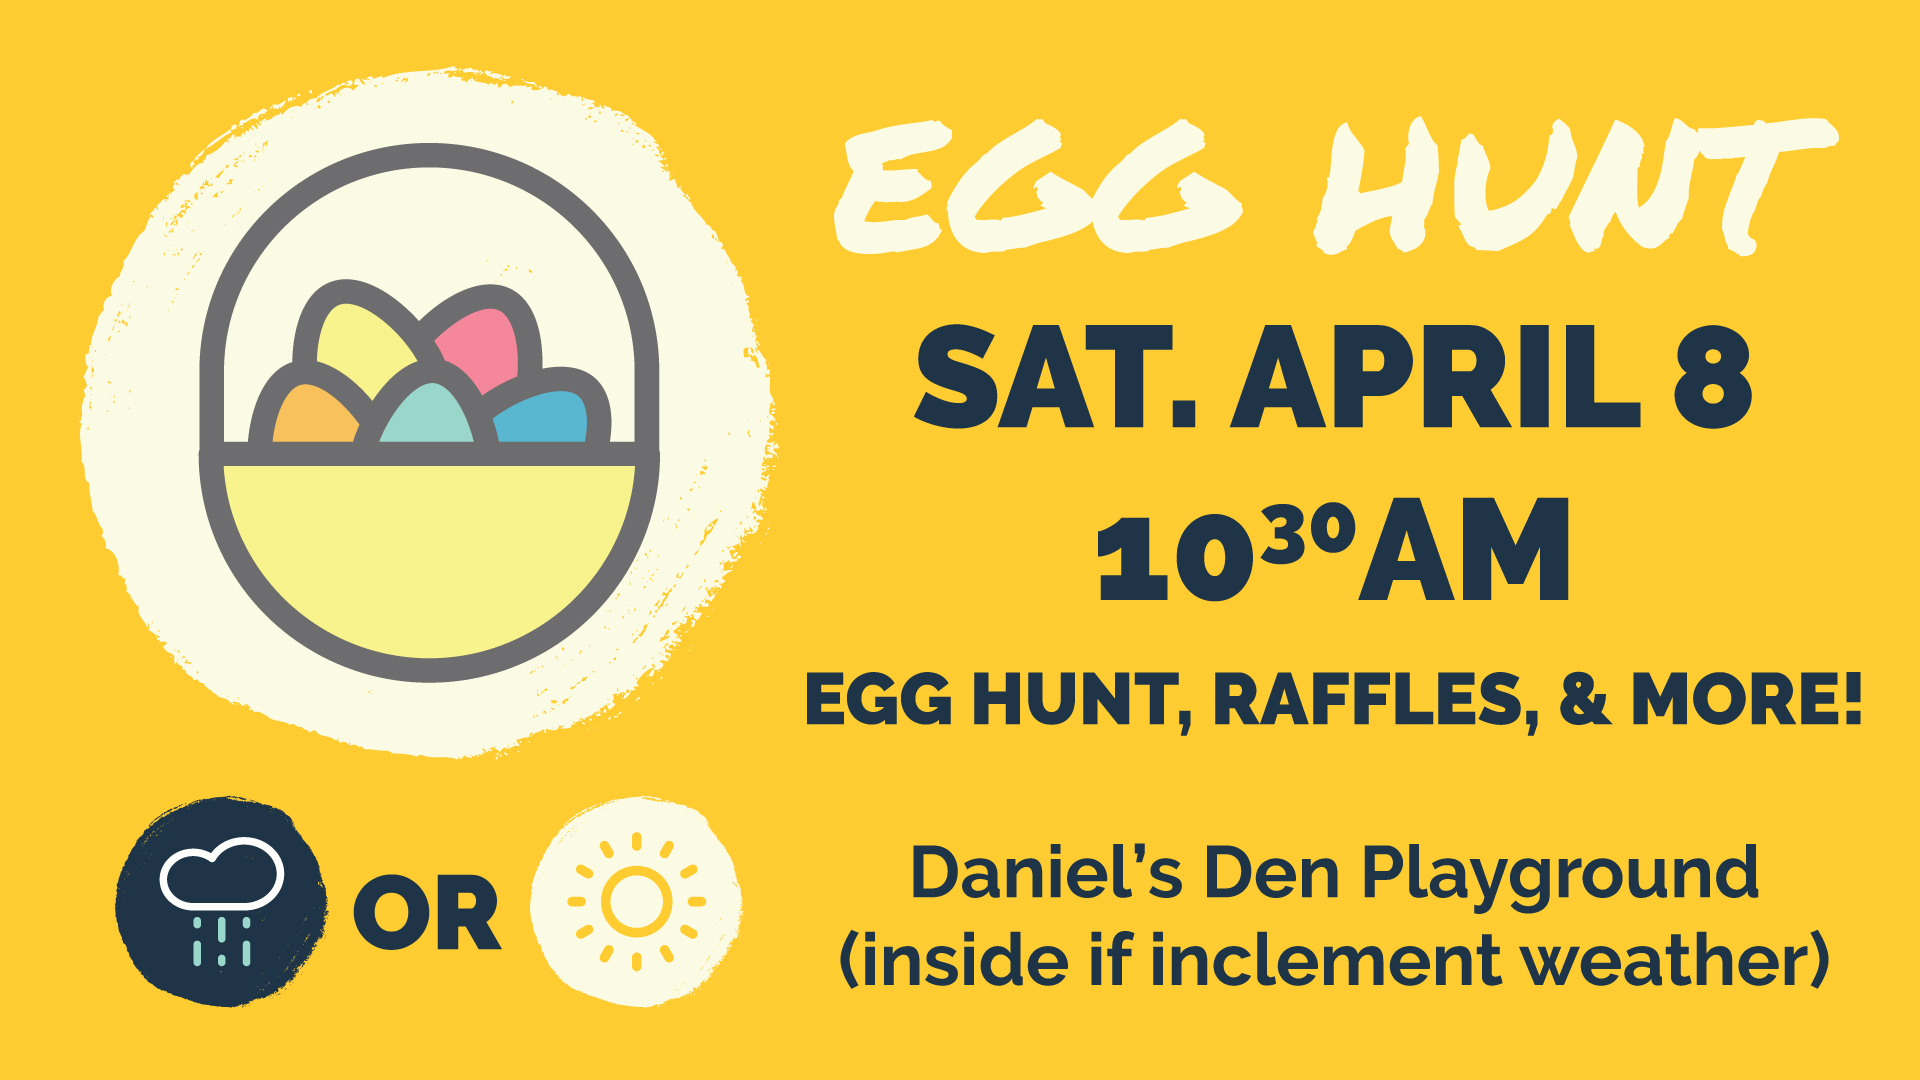 Egg Hunt | Saturday April 8 at 10:30AM